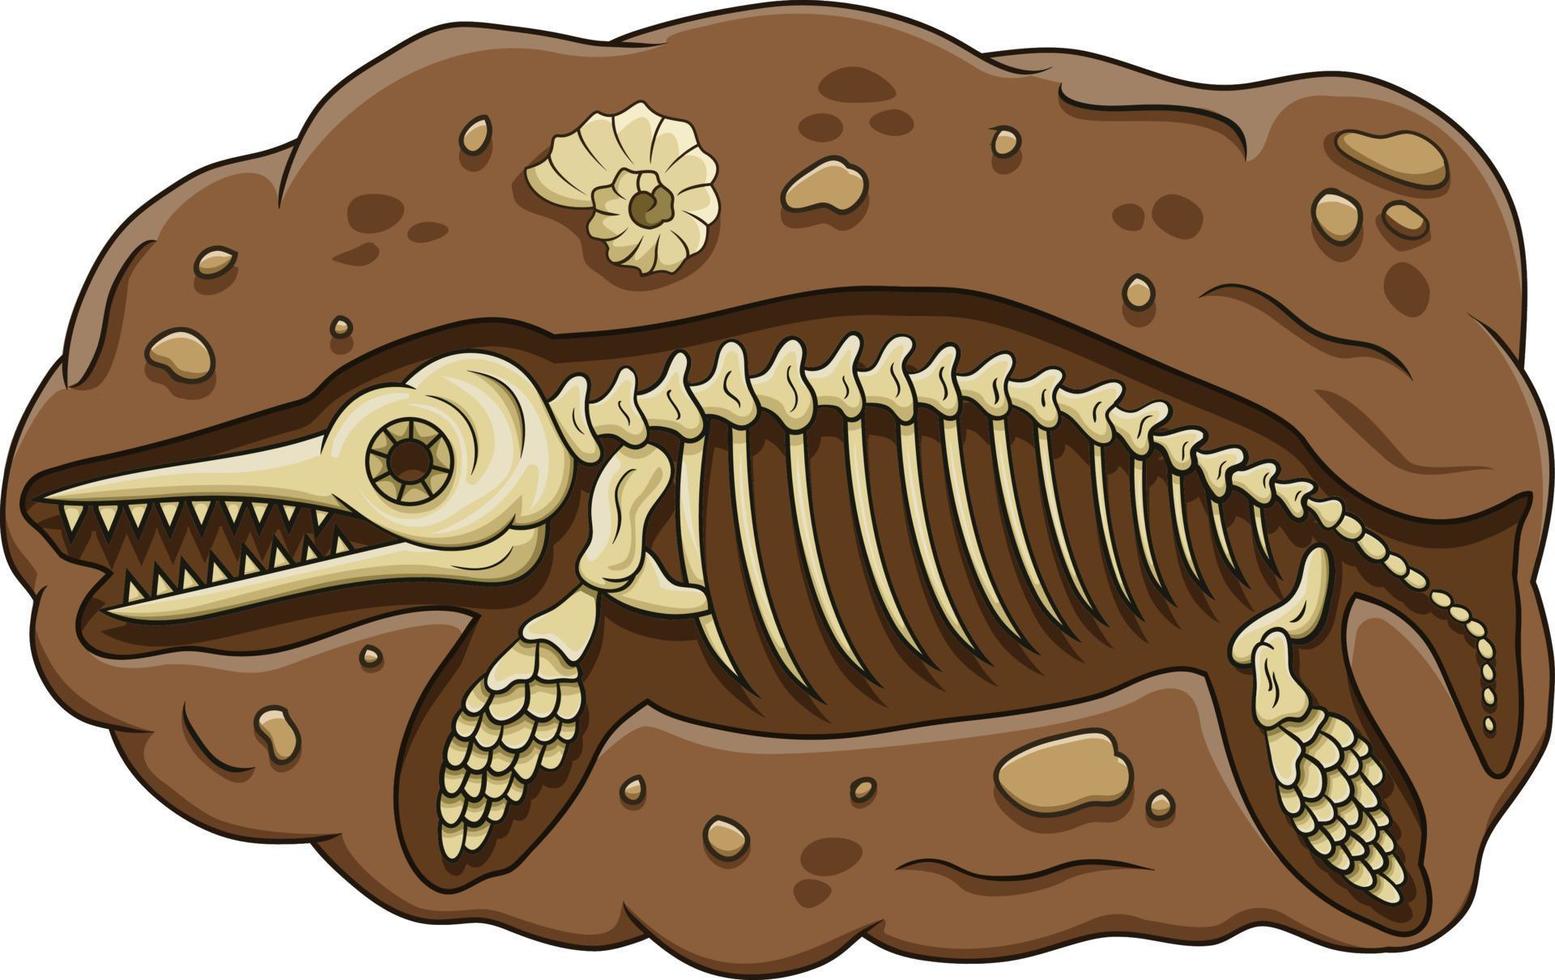 ilustração do fóssil de dinossauro ictiossauro dos desenhos animados vetor